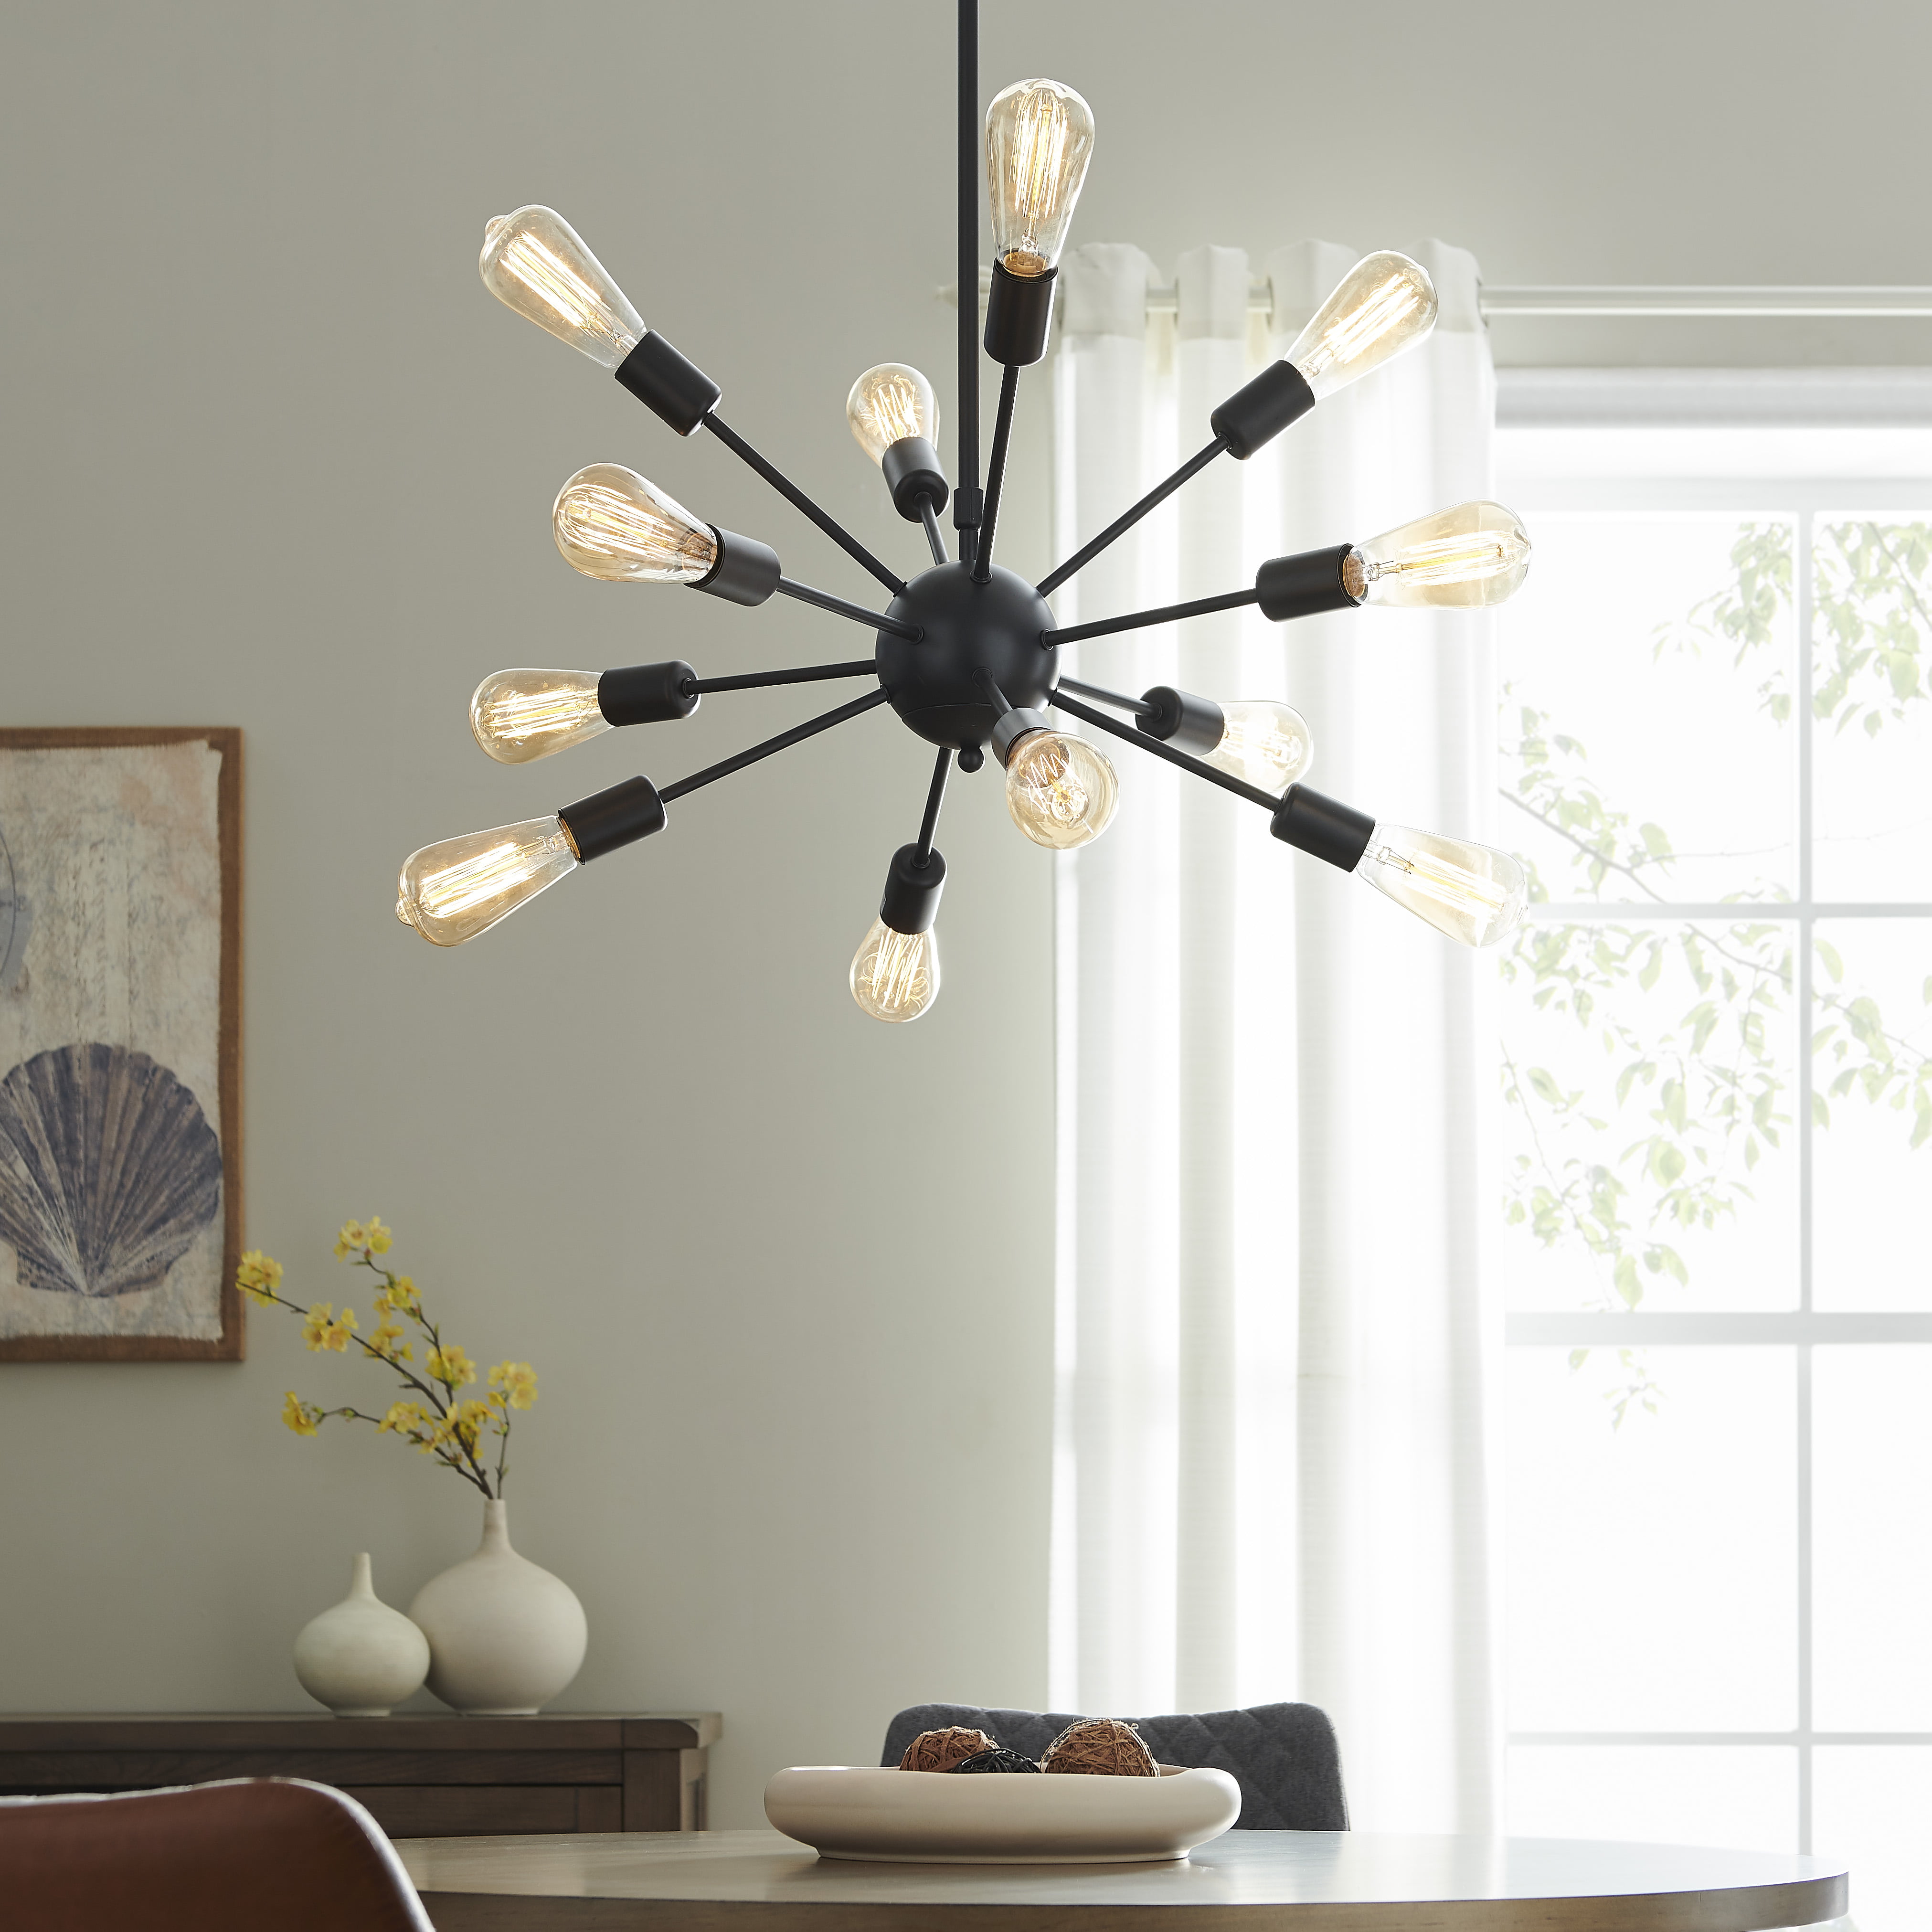 Belleze Sputnik Chandelier Mid Century, Rustic Light Fixtures For Living Room